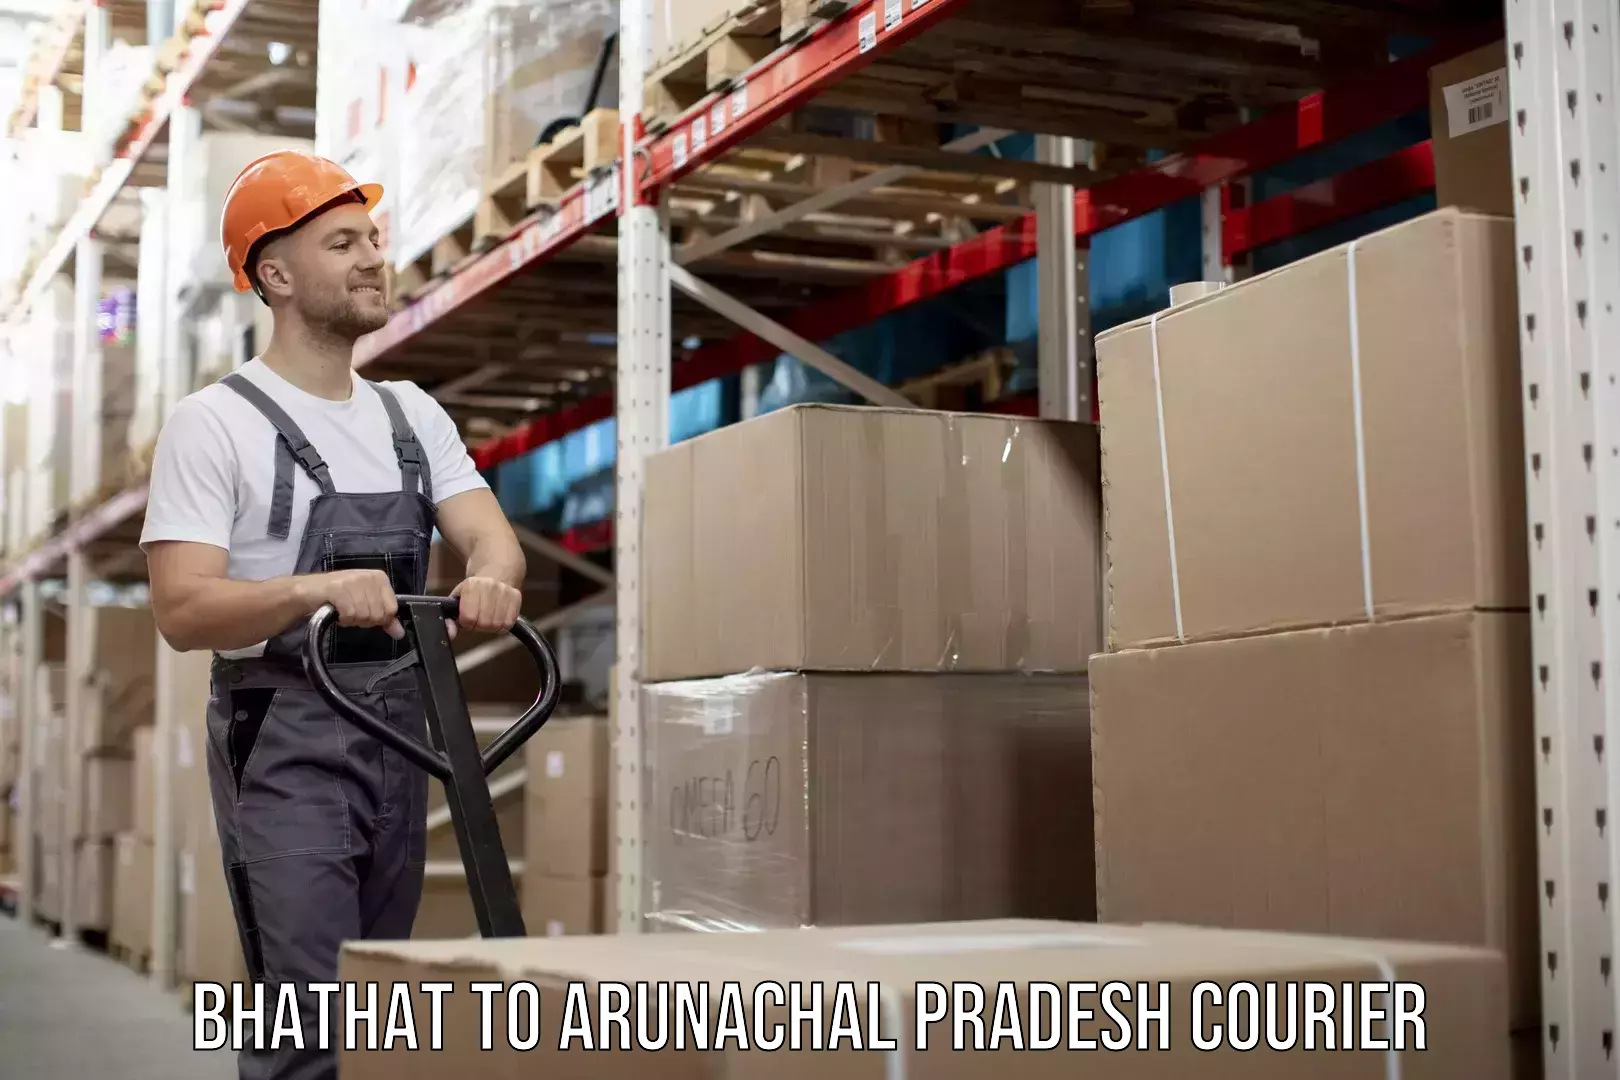 Cost-effective freight solutions Bhathat to Arunachal Pradesh